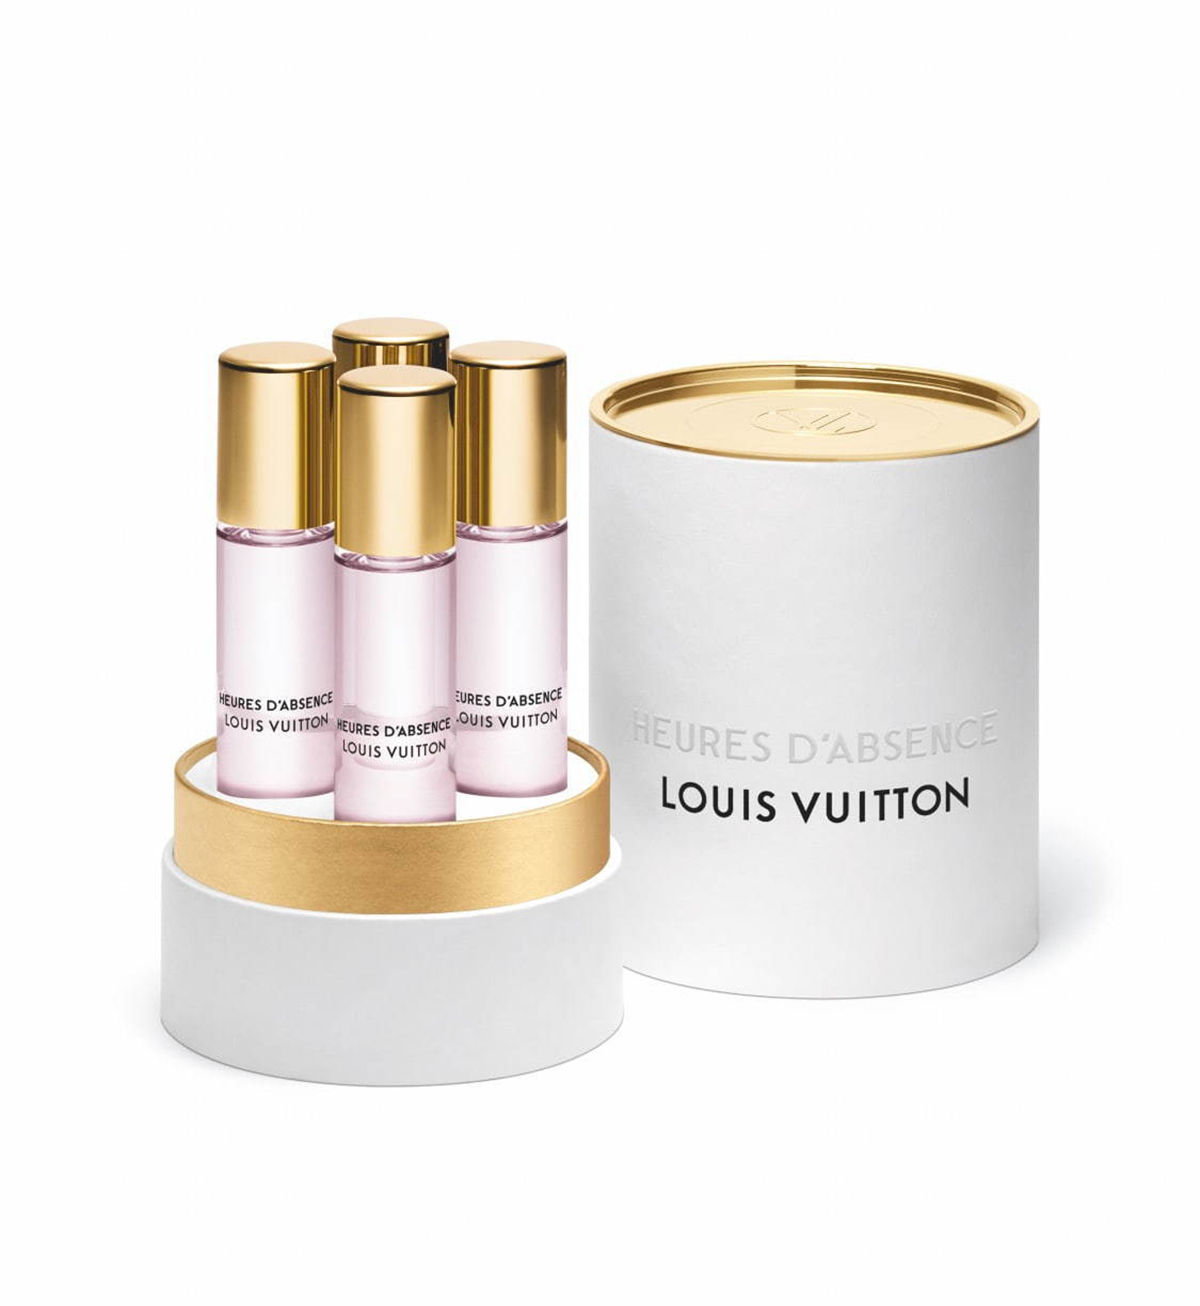 Heures d'Absence Louis Vuitton parfum - un nouveau parfum pour femme 2020